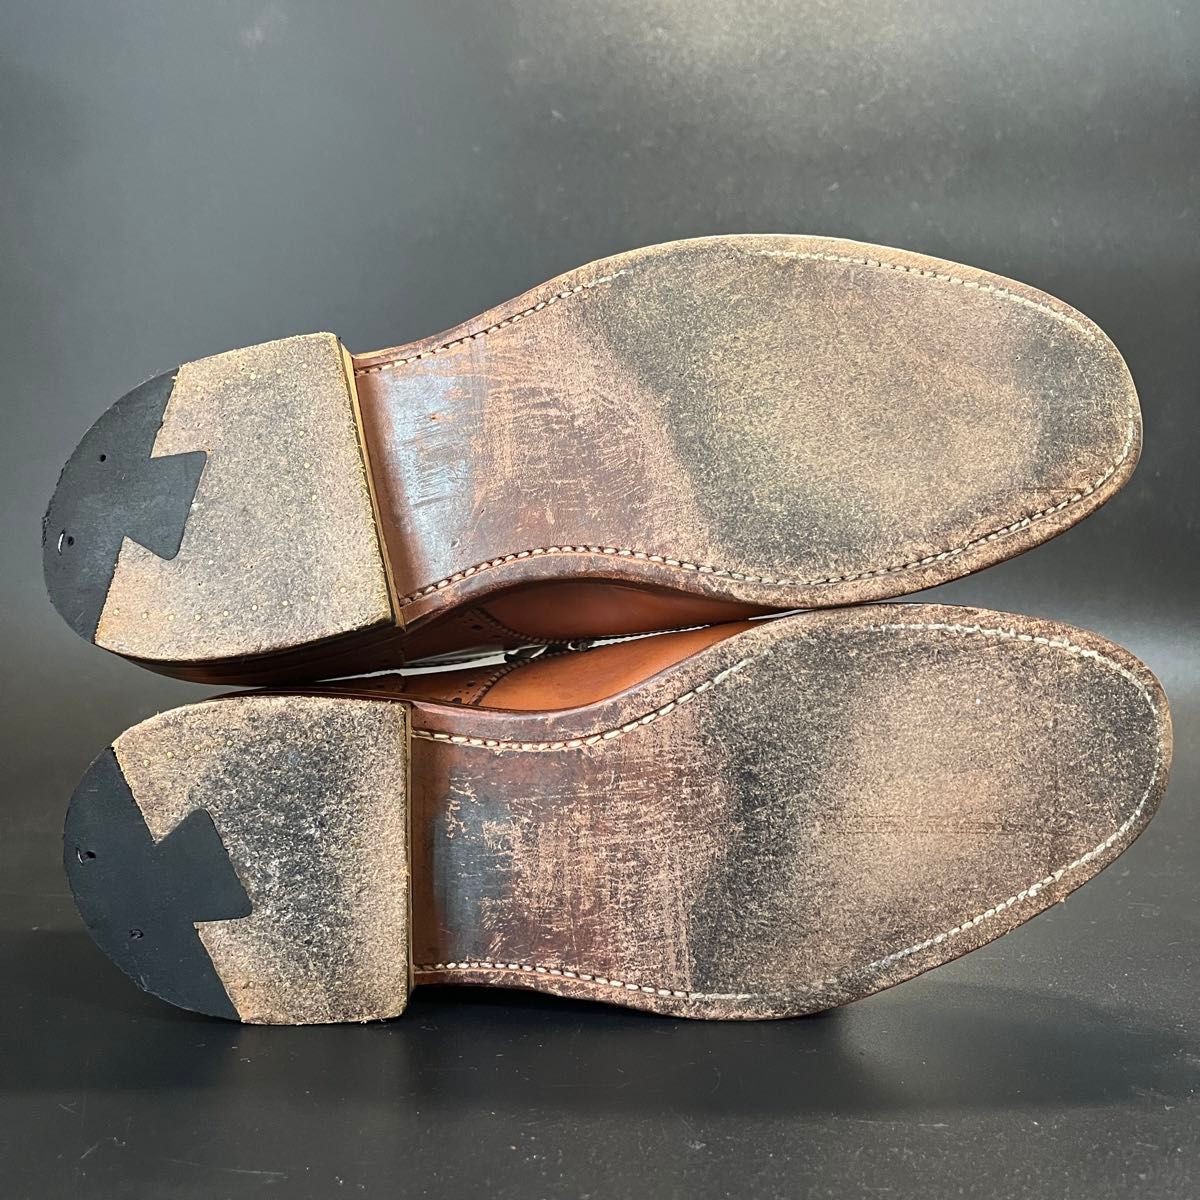 ALDEN / オールデン パンチドキャップ ダービー ブラウン サイズ7 レザー ブラウン ビジネスシューズ 革靴 茶 靴